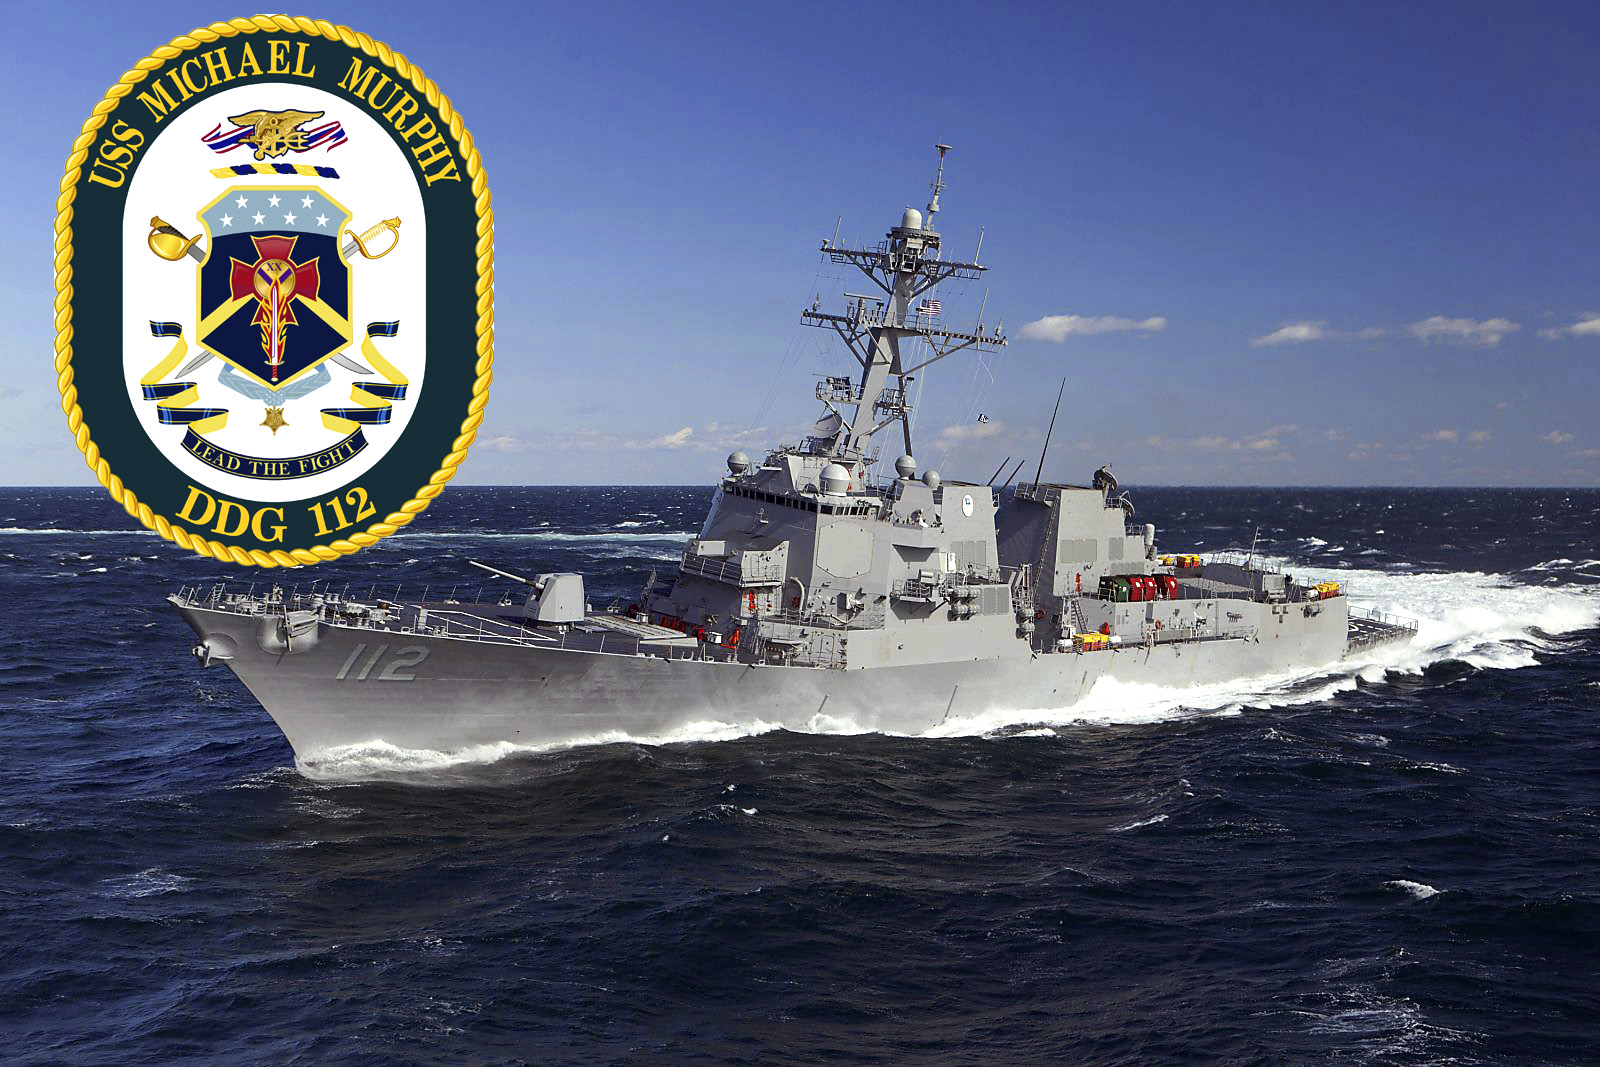 USS MICHAEL MURPHY DDG-112 Bild und Garfik: U.S. Navy